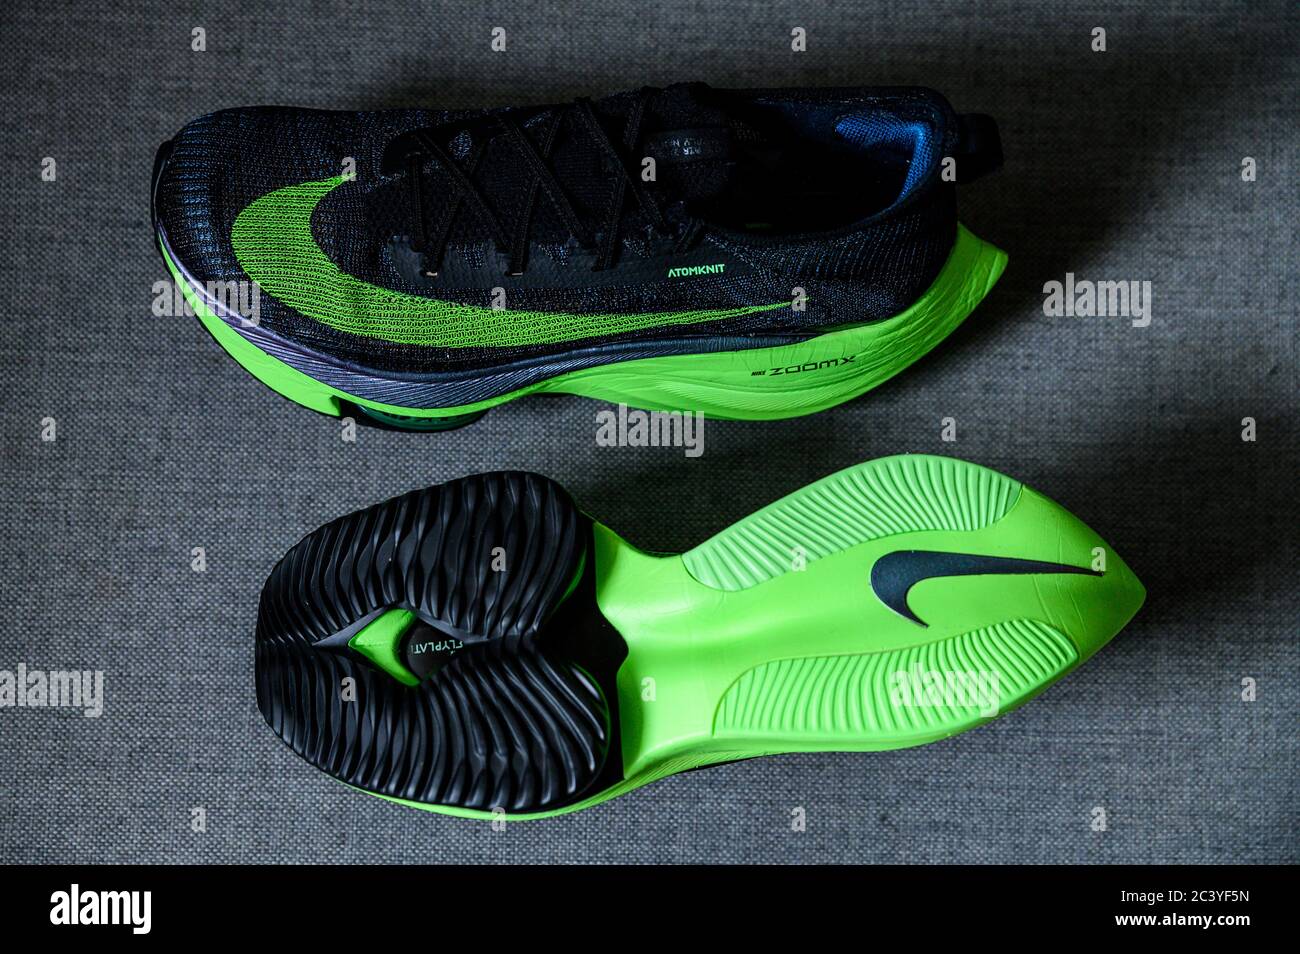 ROMA, ITALIA, JUNIO DE 23. 2020: Zapatillas de running Nike ALPHAFLY NEXT%.  Polémico verde, negro atletismo zapatillas maratón. Detalle de la espuma  Air Zoomx, Zoom Air Fotografía de stock - Alamy